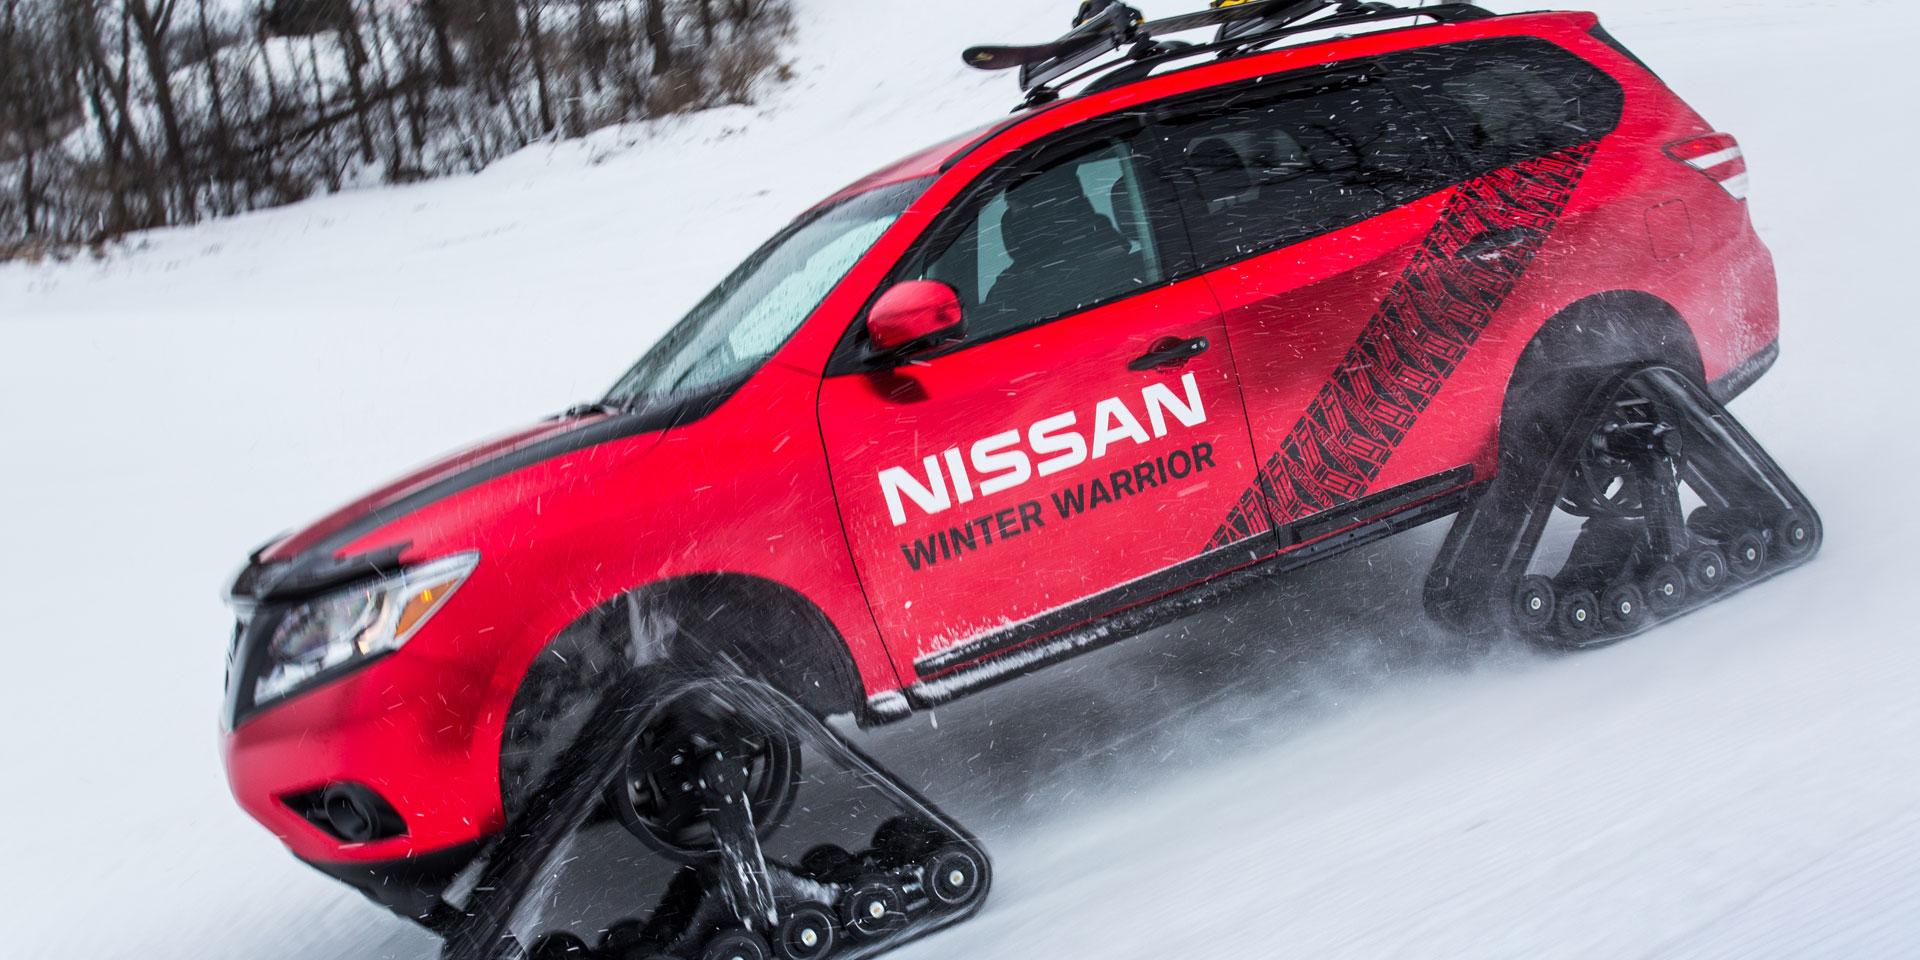 2016 Nissan Pathfinder Winter Warrior